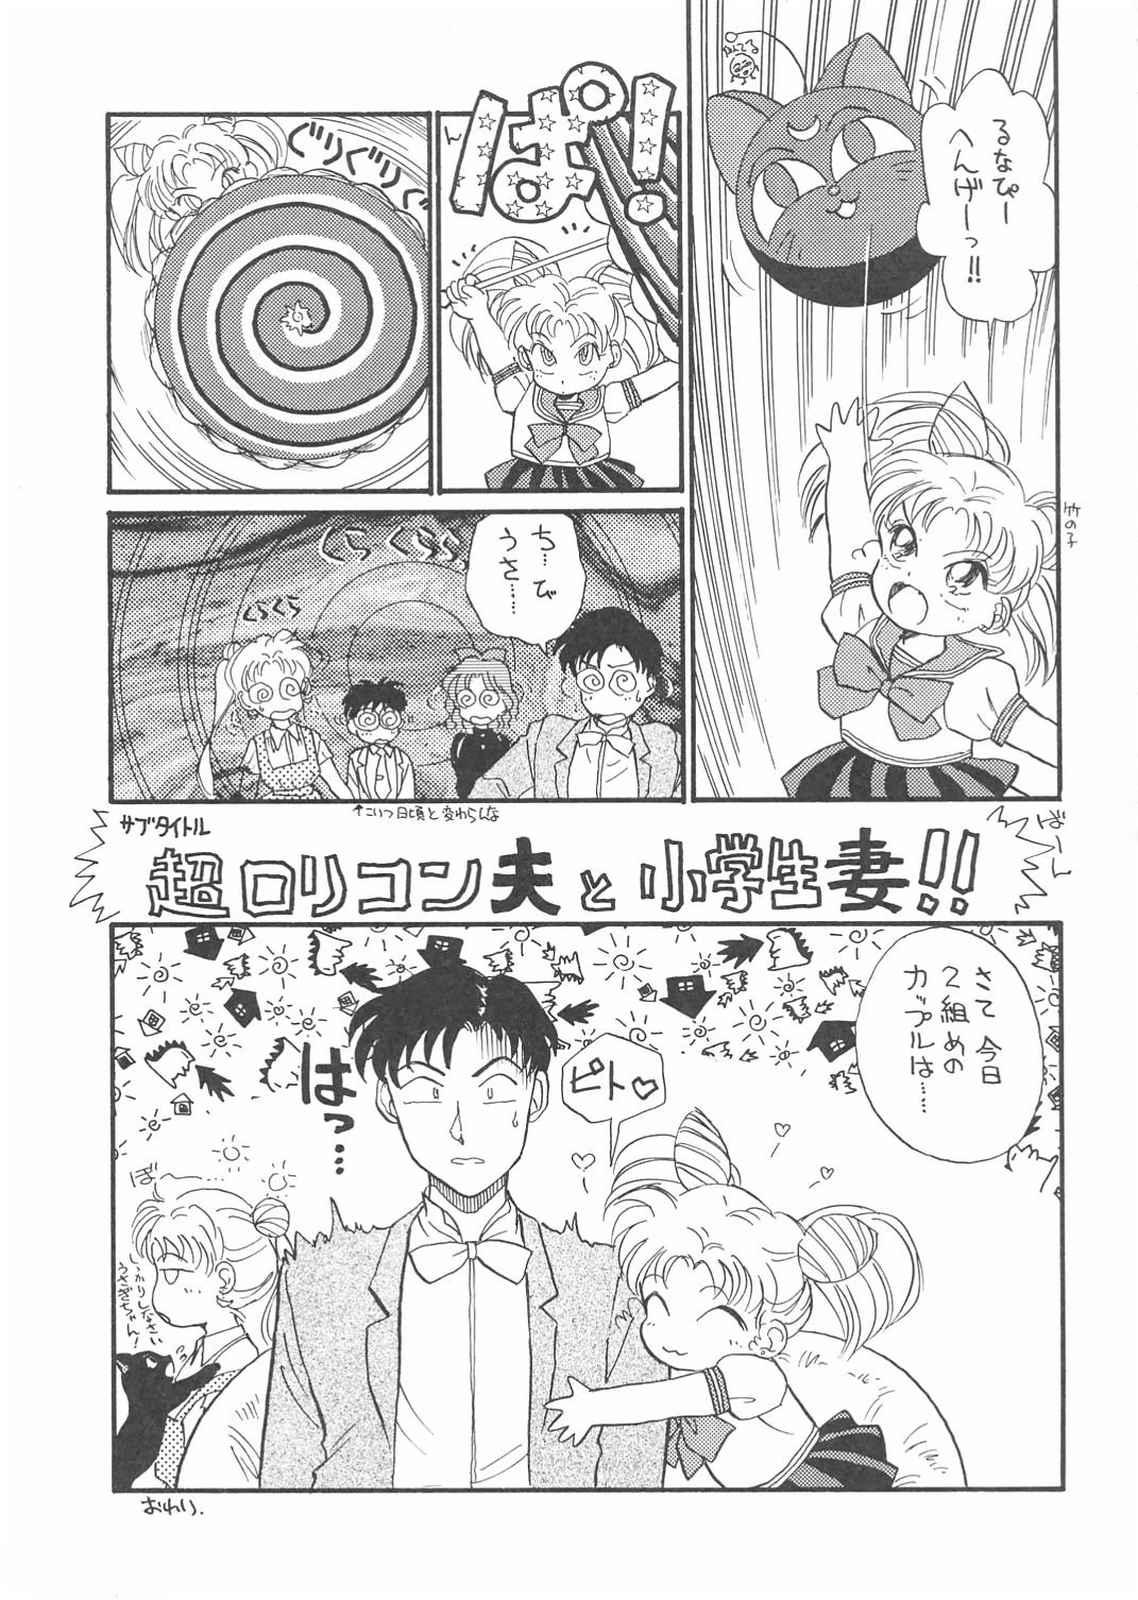 Ass To Mouth Gekkou 3 - Sailor moon Salope - Page 13